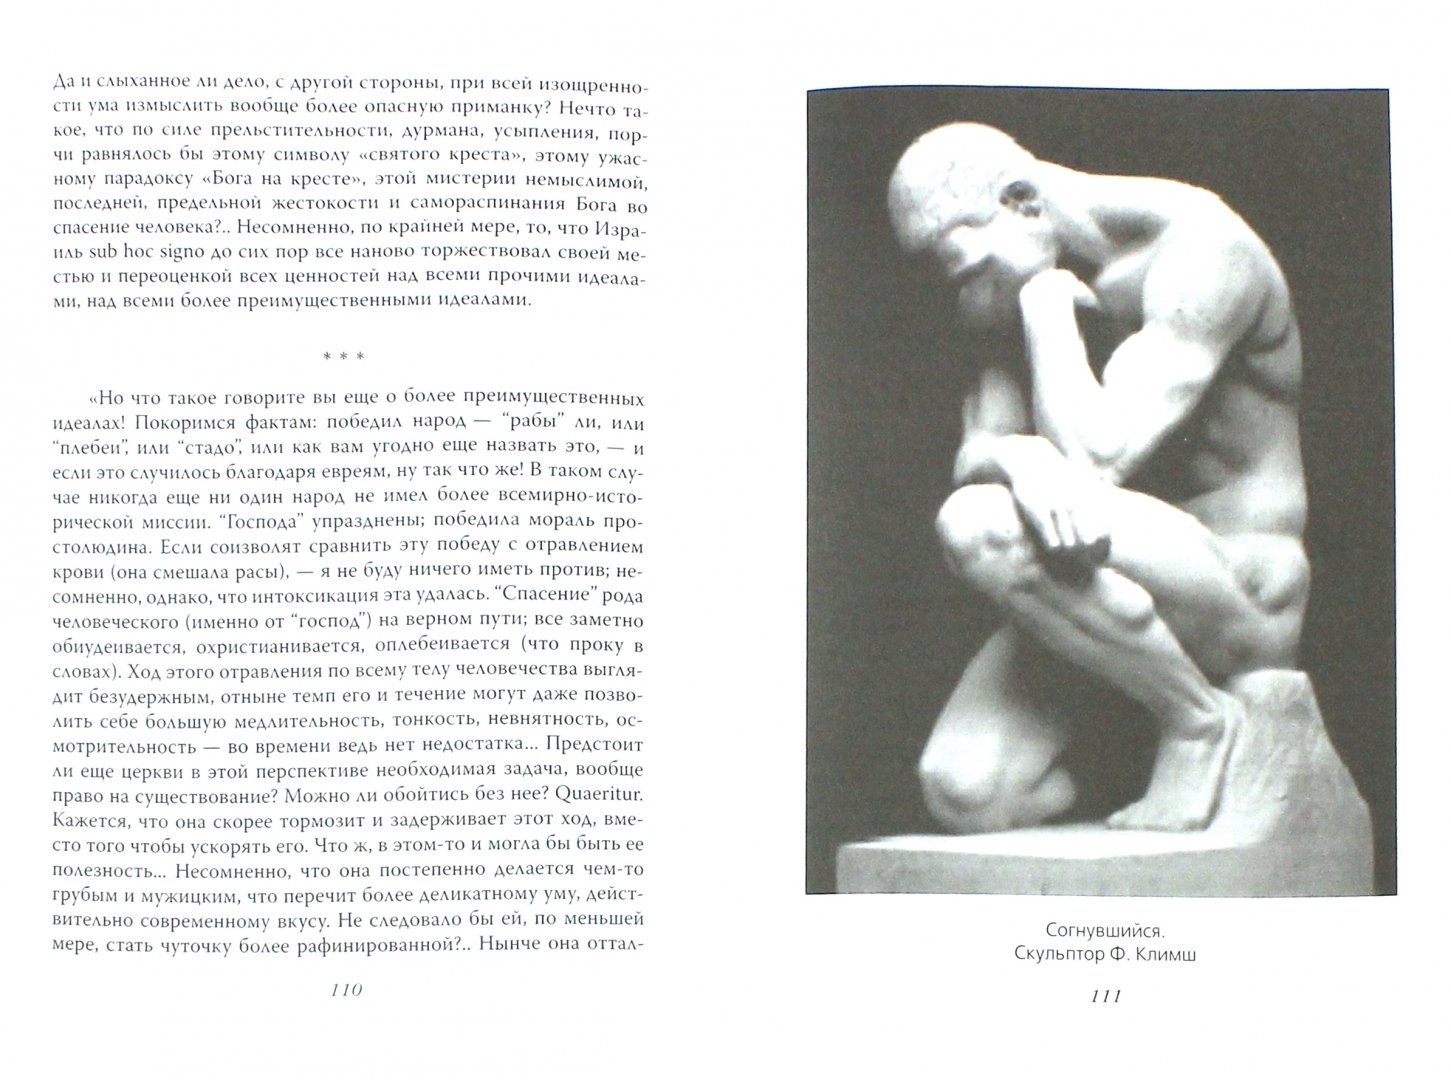 Иллюстрация 1 из 2 для Сверхчеловек против супер-эго - Ницше, Фрейд | Лабиринт - книги. Источник: Лабиринт